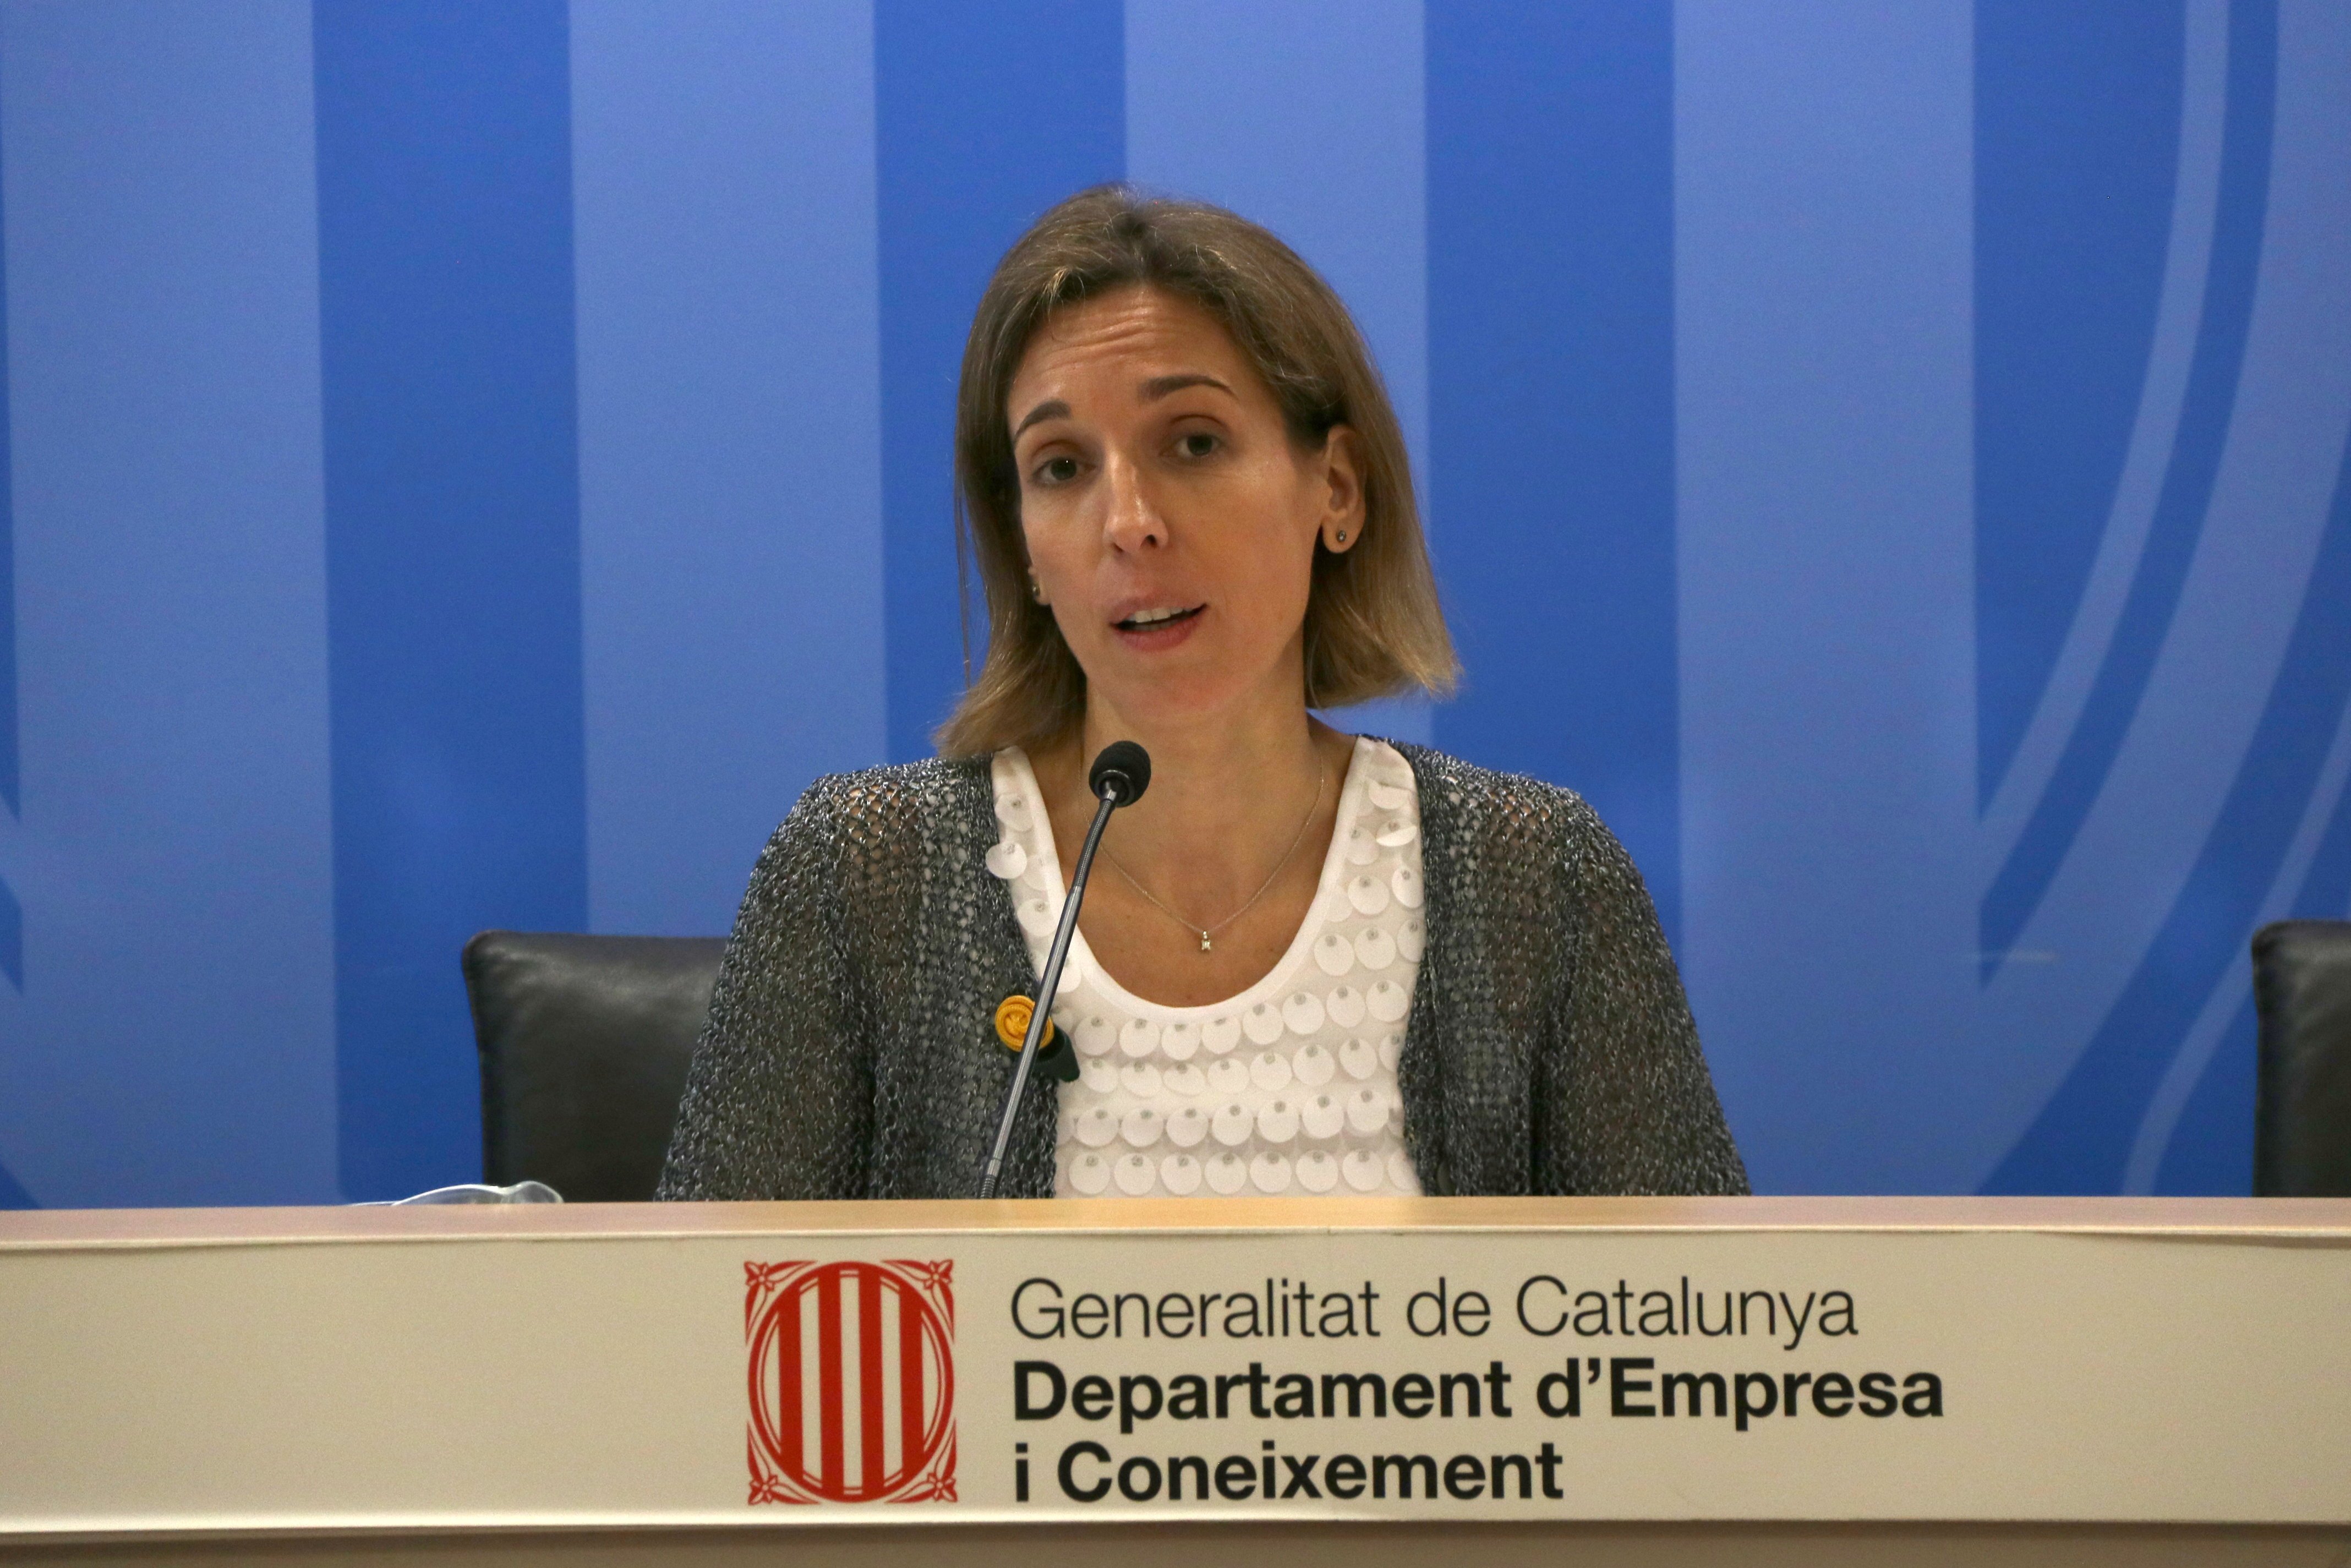 La inversión industrial en Catalunya alcanzará máximos en 2018